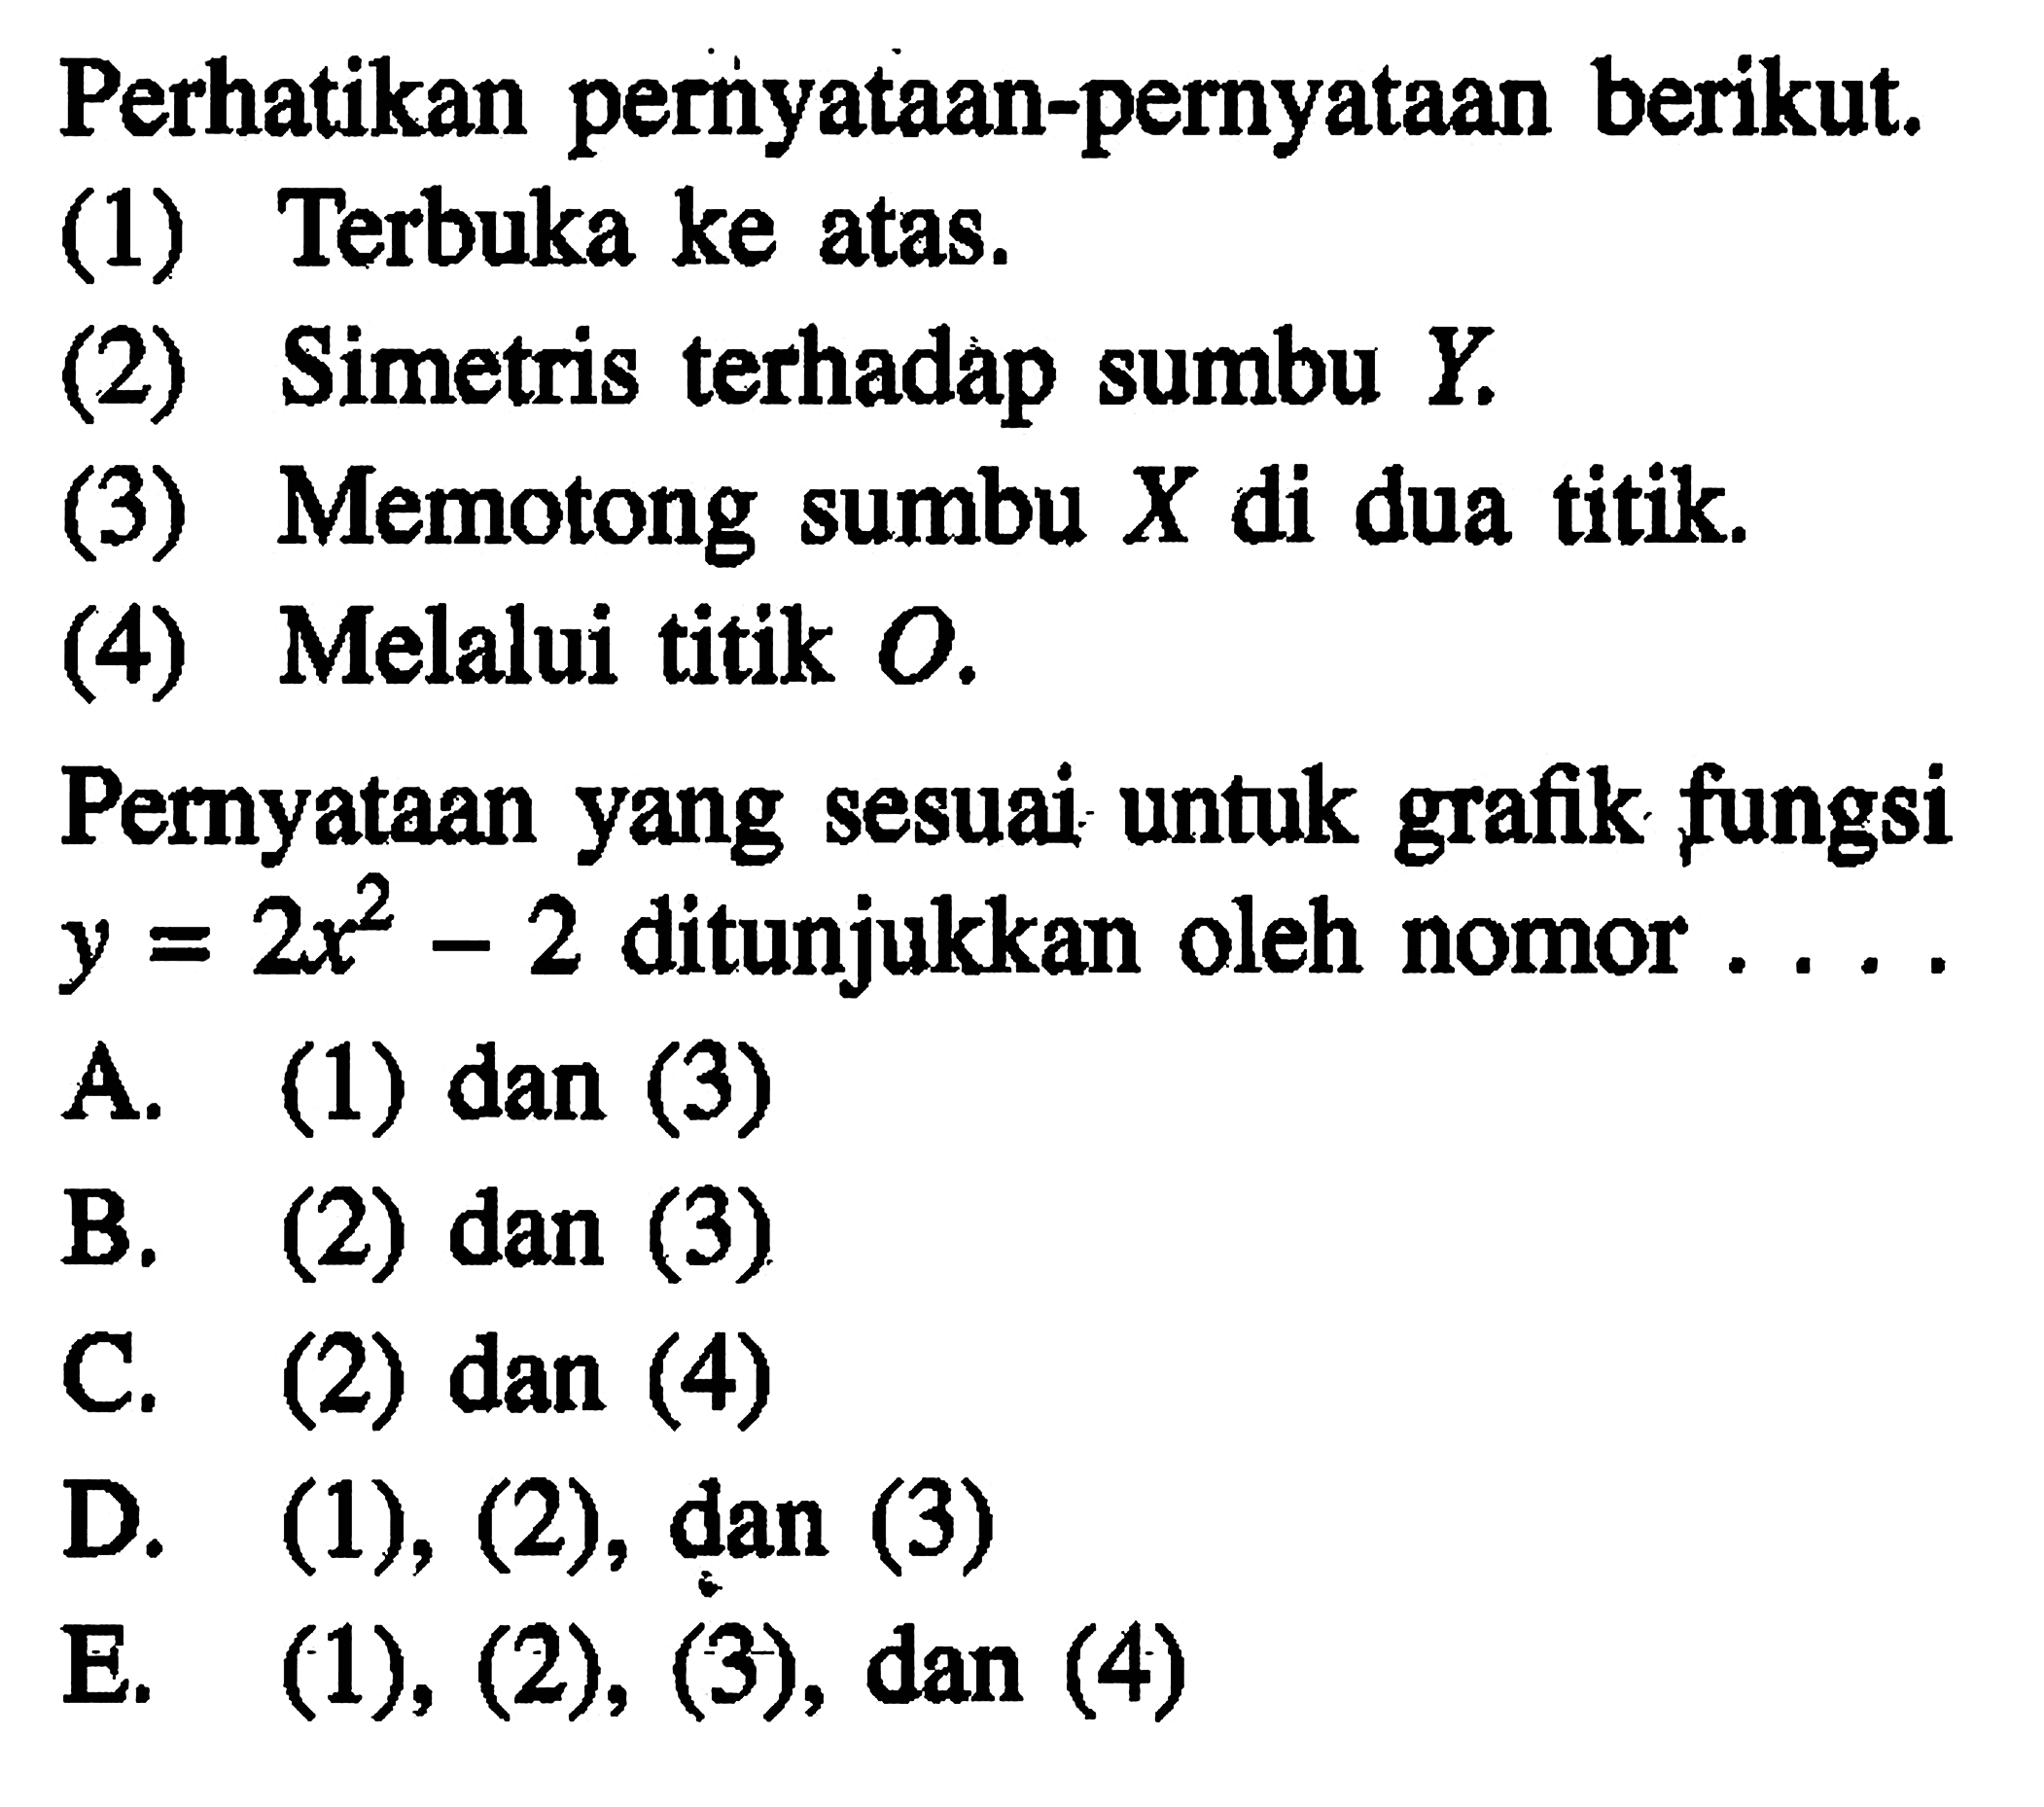 Perhatikan pernyataan-pernyataan berikut: (1) Terbuka ke atas. (2) Simetris terhadap sumbu Y. (3) Memotong sumbu X di dua titik. (4) Melalui titik O. Pernyataan yang sesuai untuk grafik fungsi y = 2x^2 - 2 ditunjukkan oleh nomor... A. (1) dan (3) B. (2) dan (3) C. (2) dan (4) D. (1), (2), dan (3) E. (1), (2), (3), dan (4)